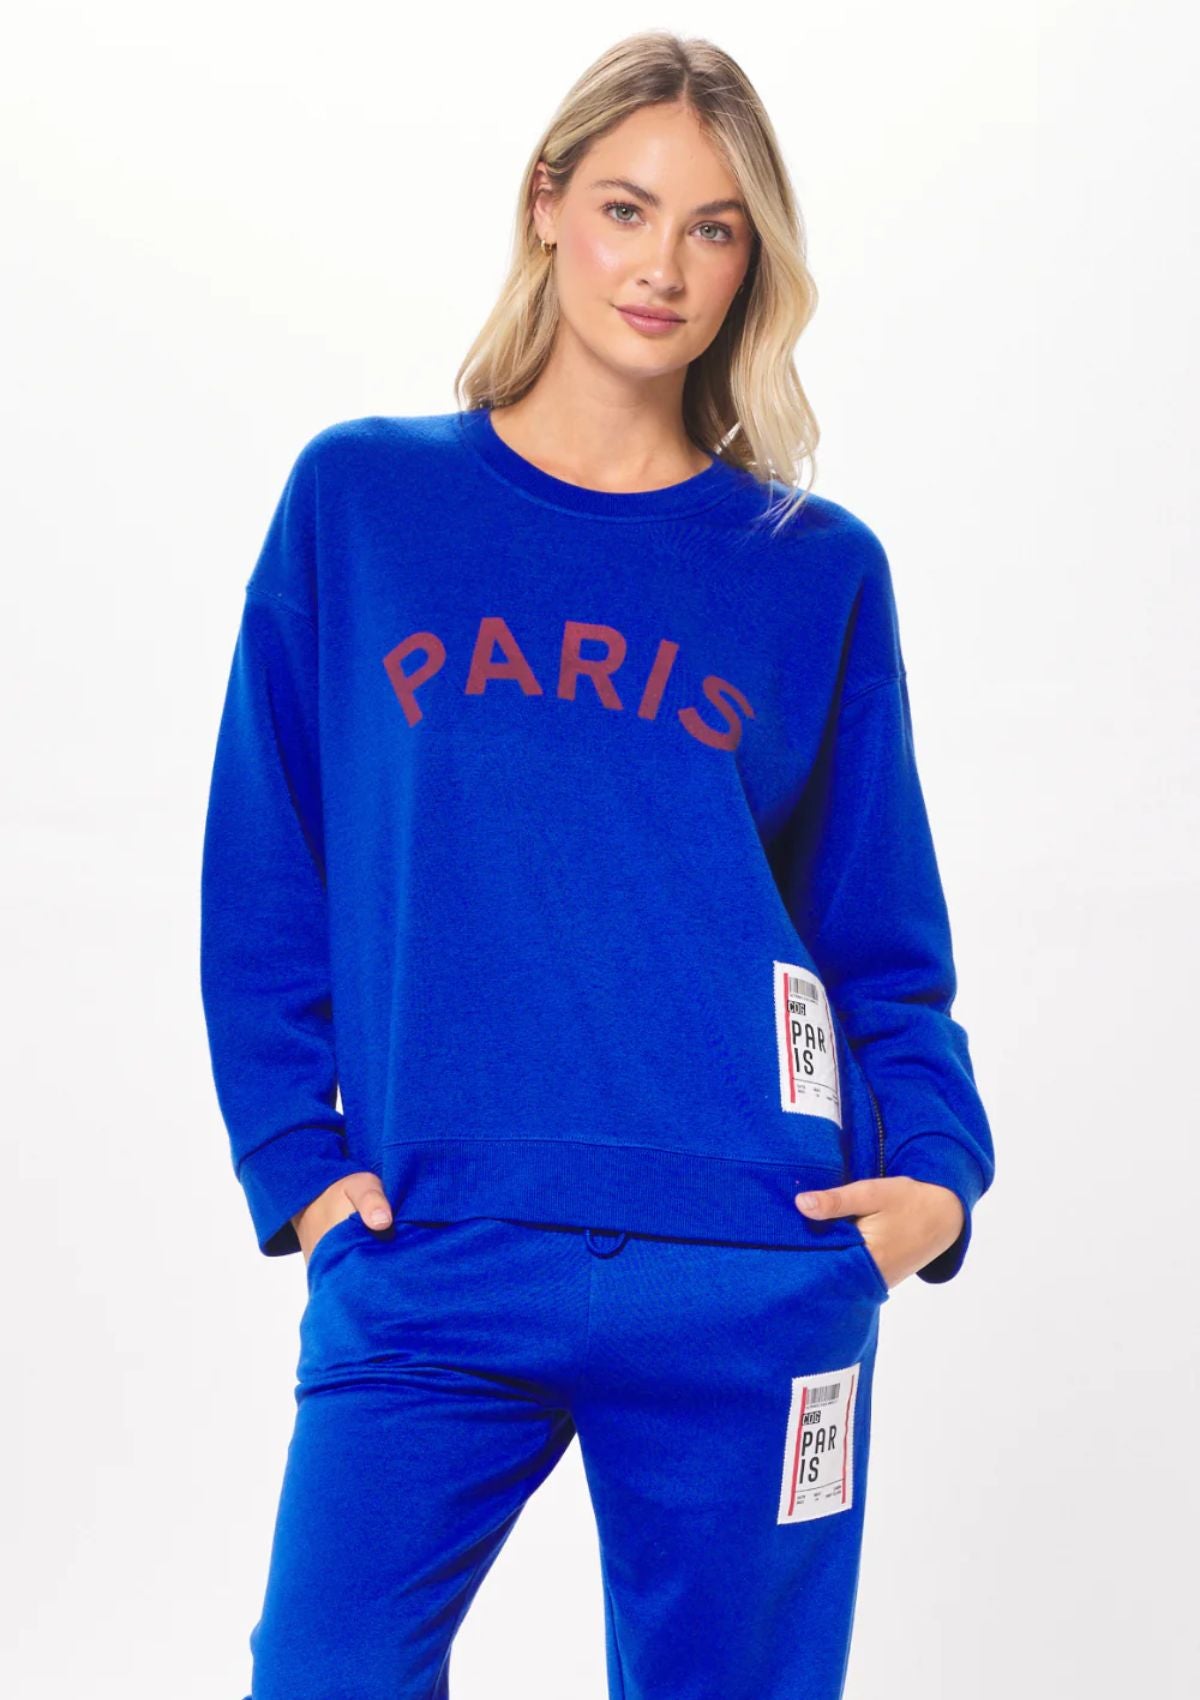 Paris Boarding Pass Crewneck Sweater